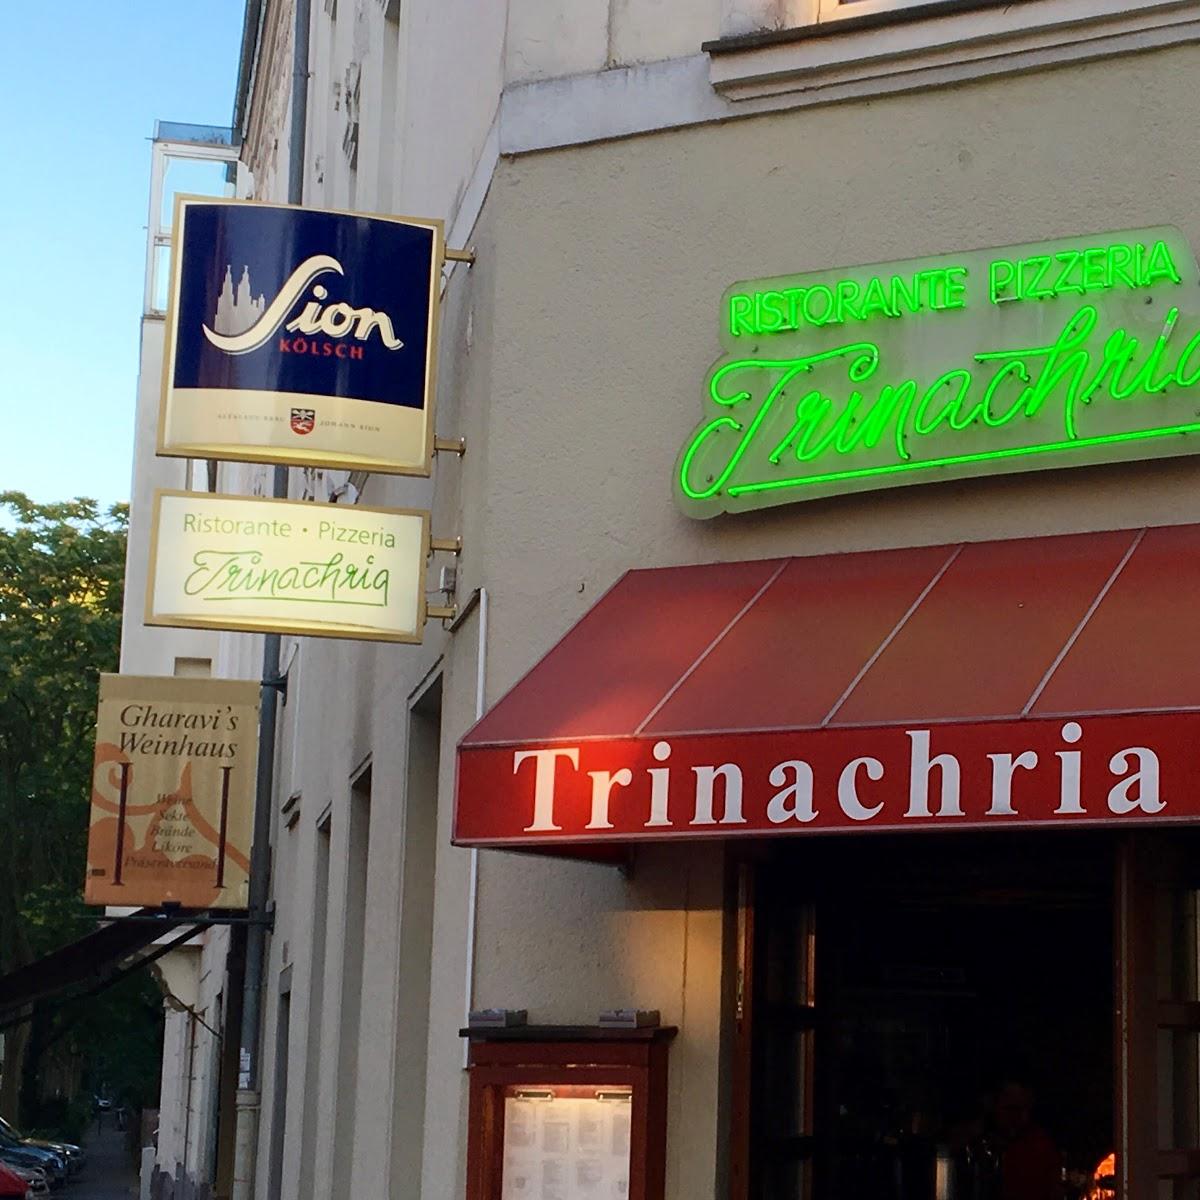 Restaurant "Trinachria" in Köln